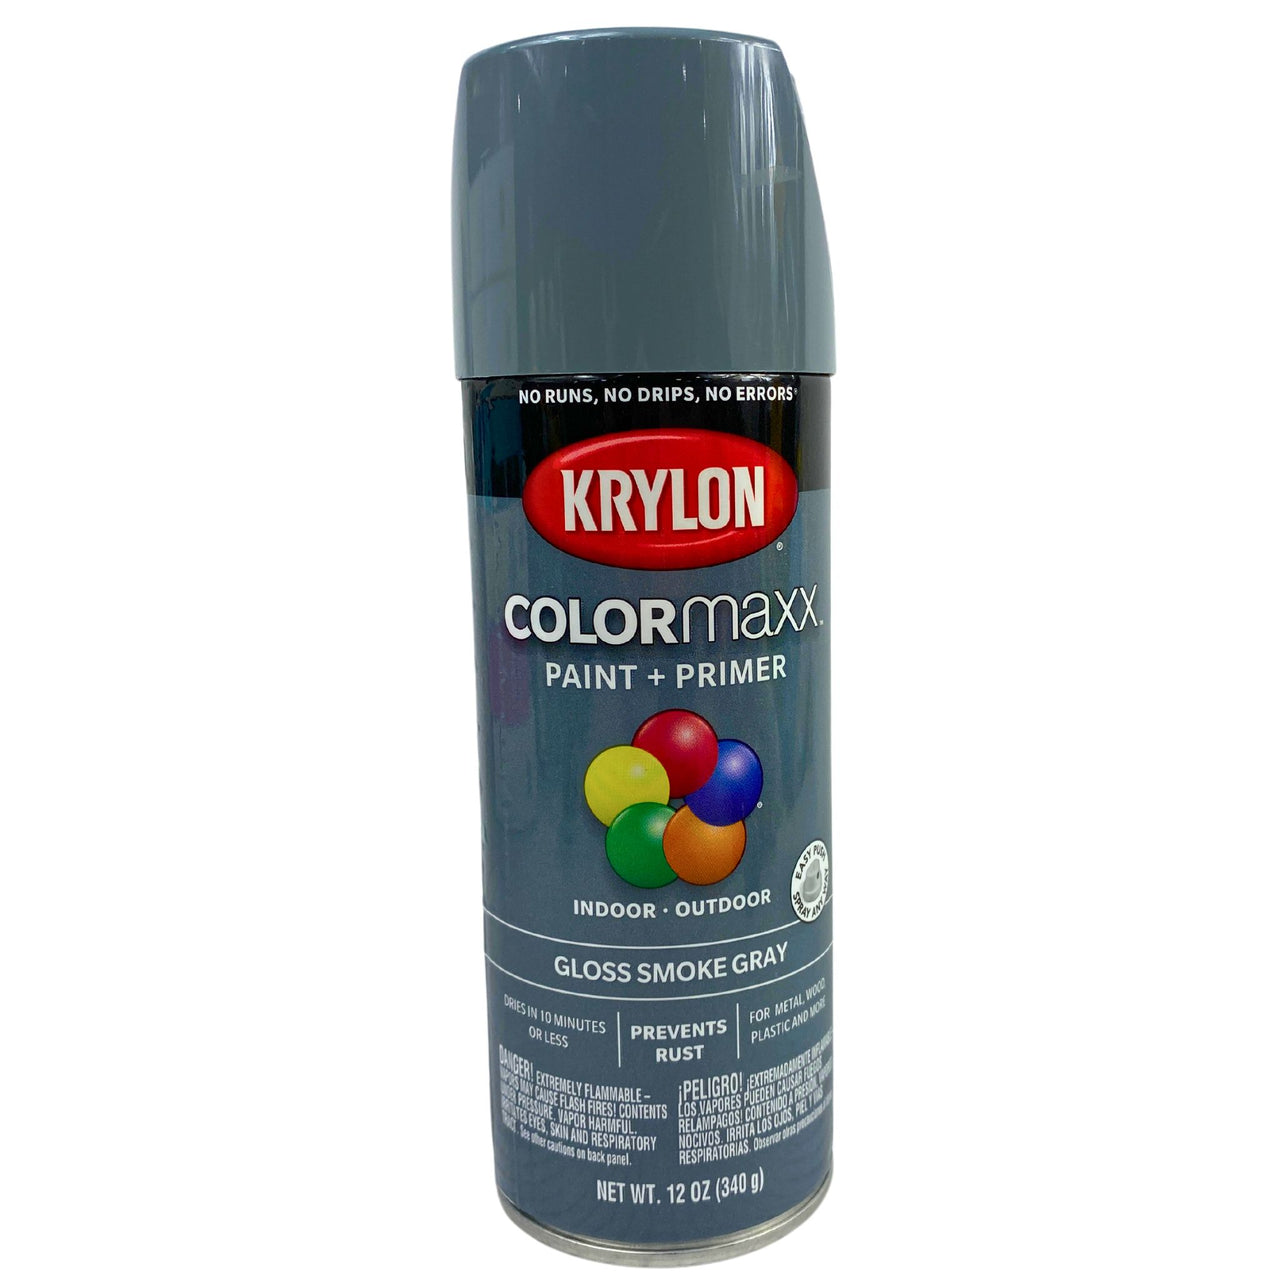 Krylon Colormaxx Paint + Primer Indoor & Outdoor Use